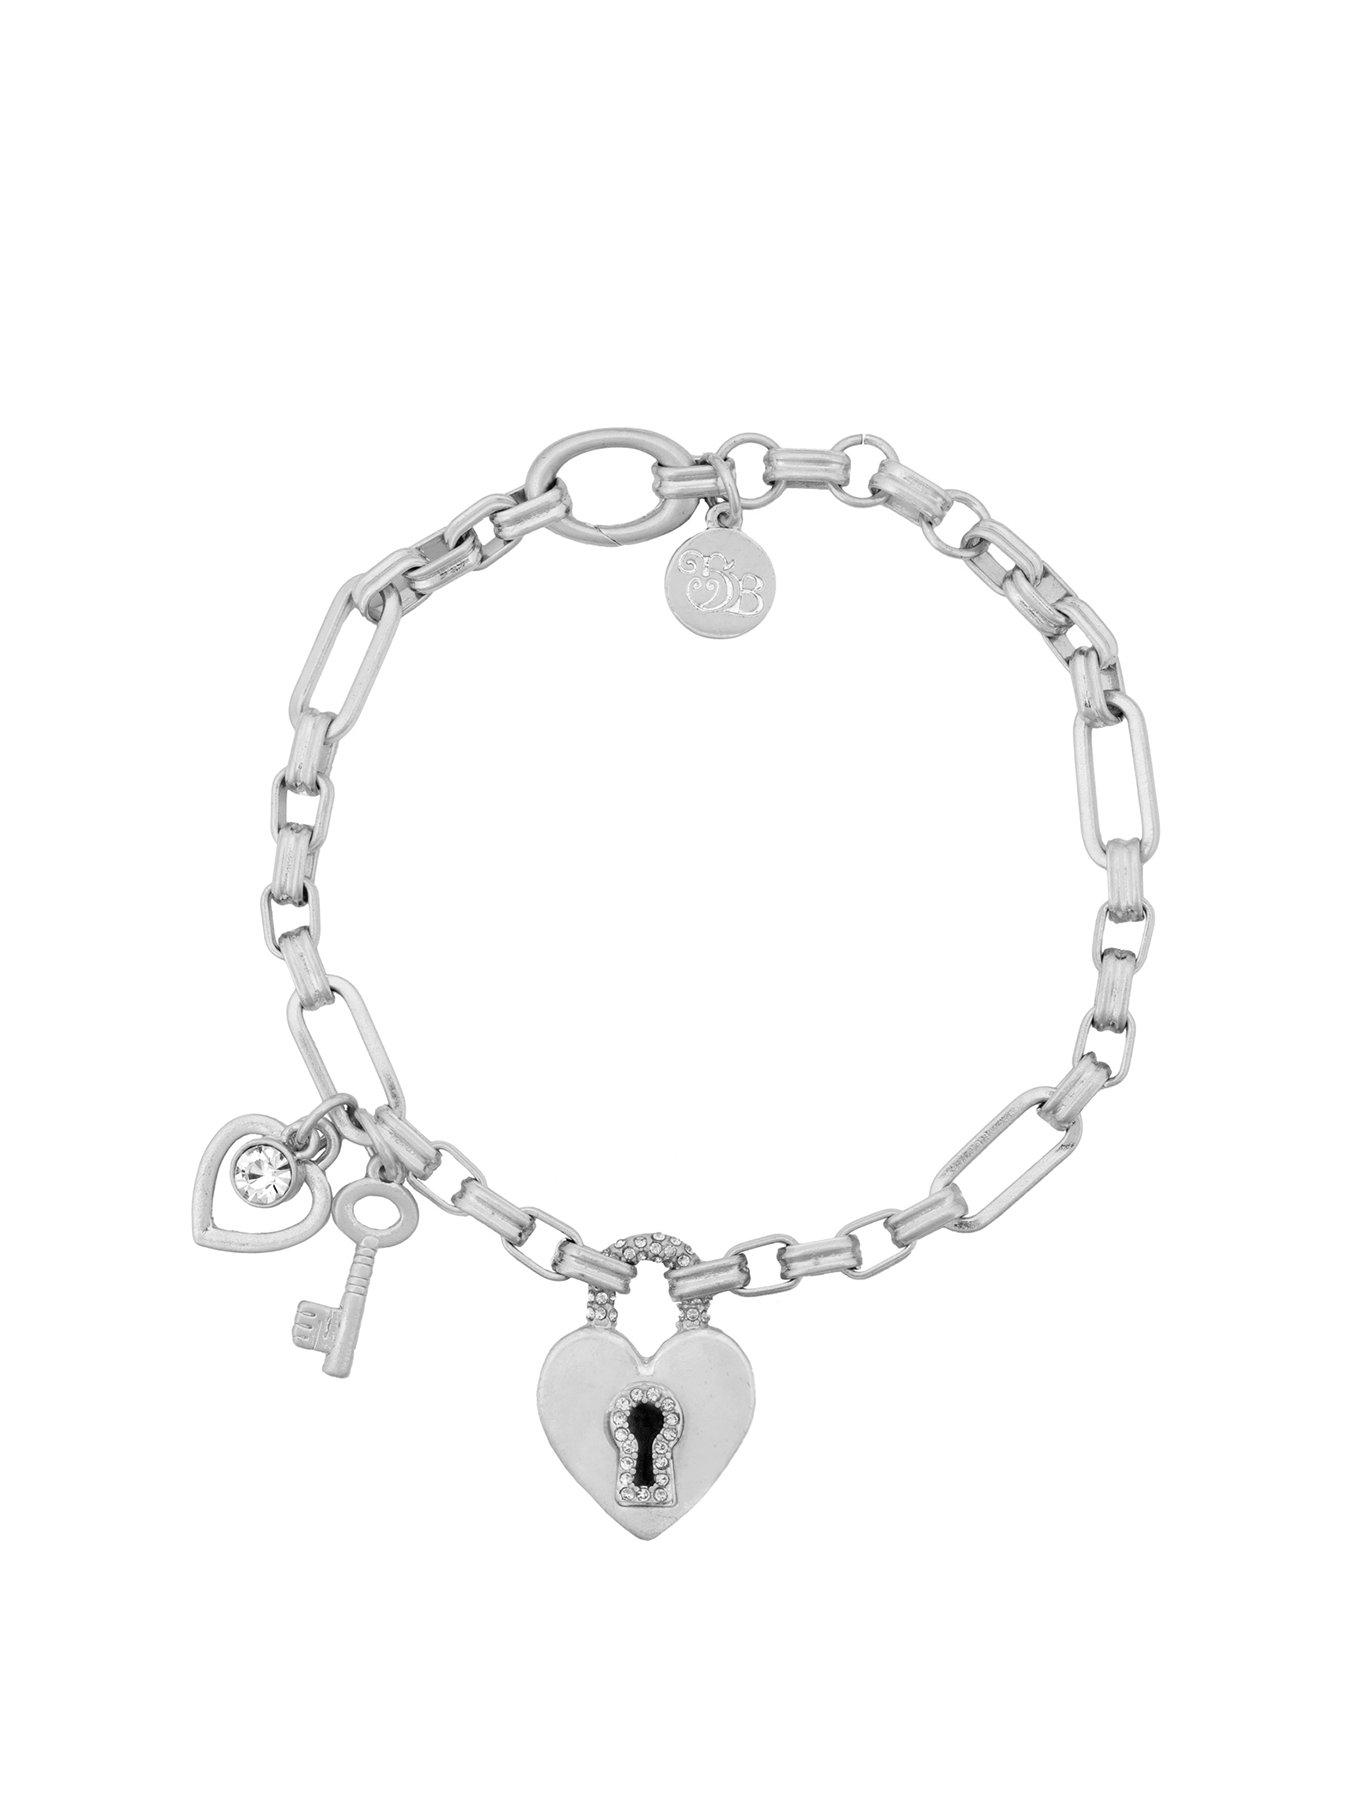 Women Silver Pave Heart Padlock and Key Bracelet